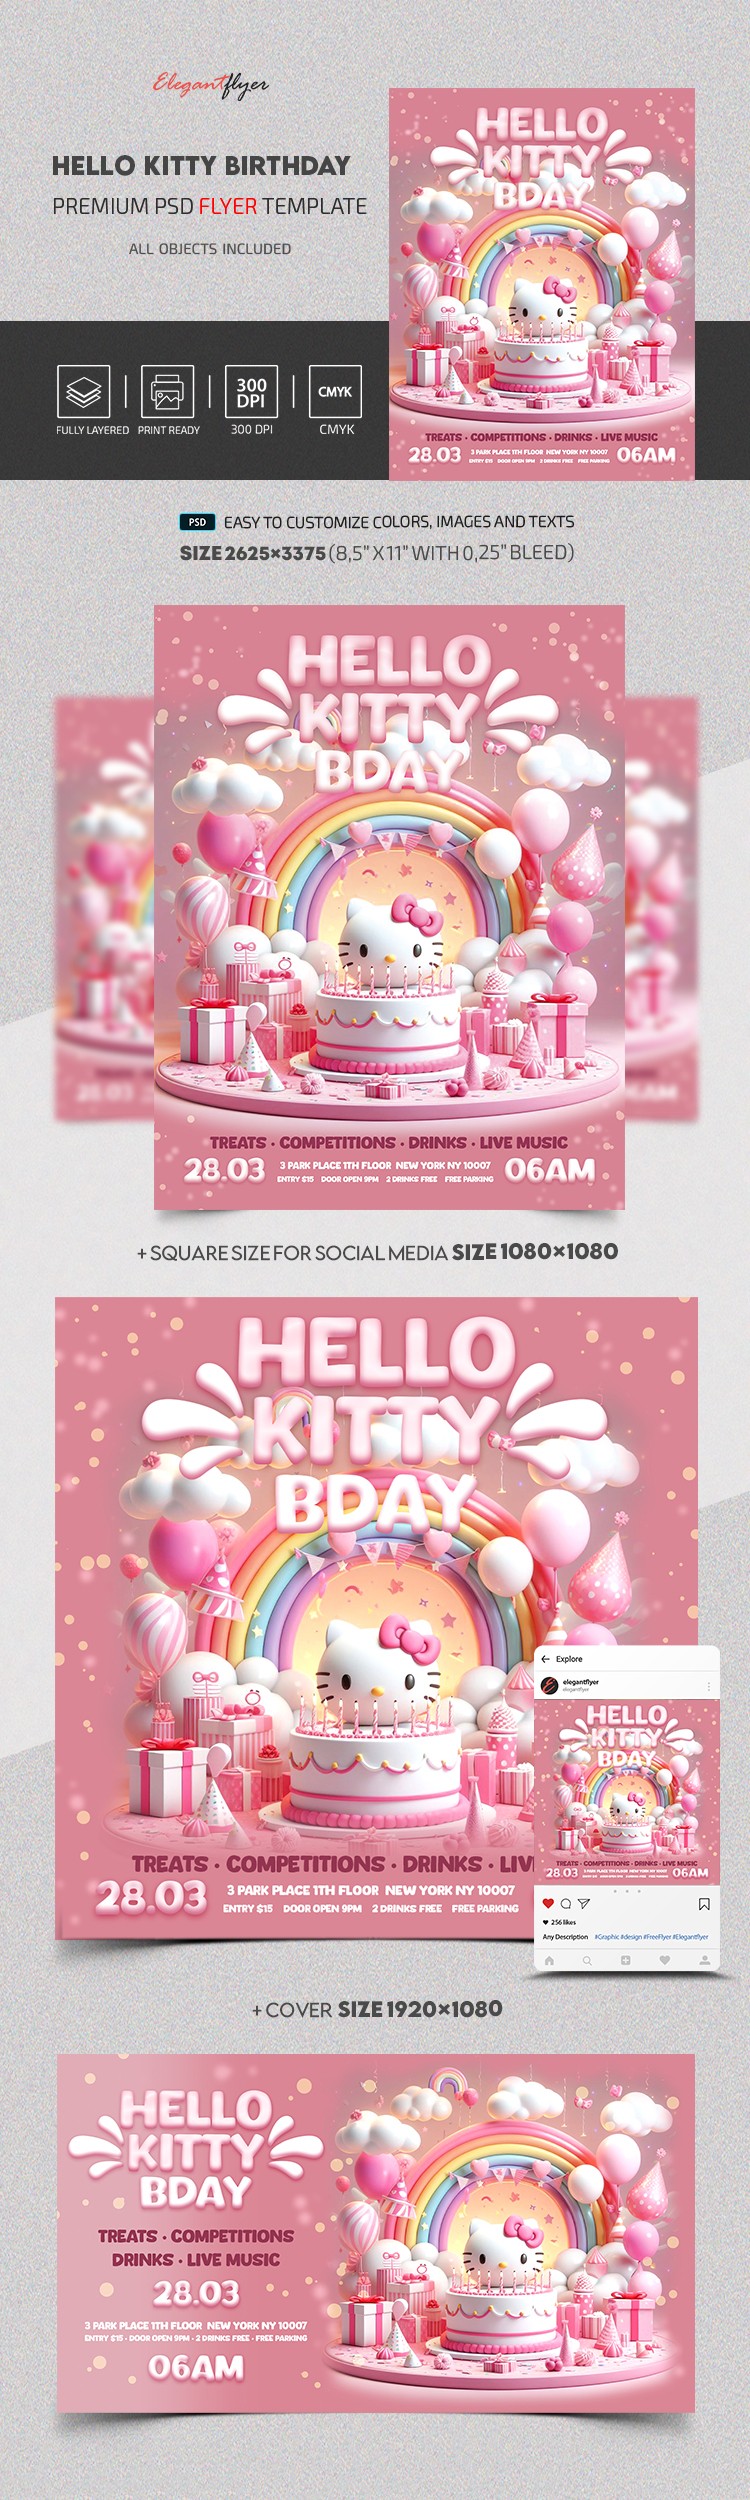 Hello Kitty Birthday by ElegantFlyer